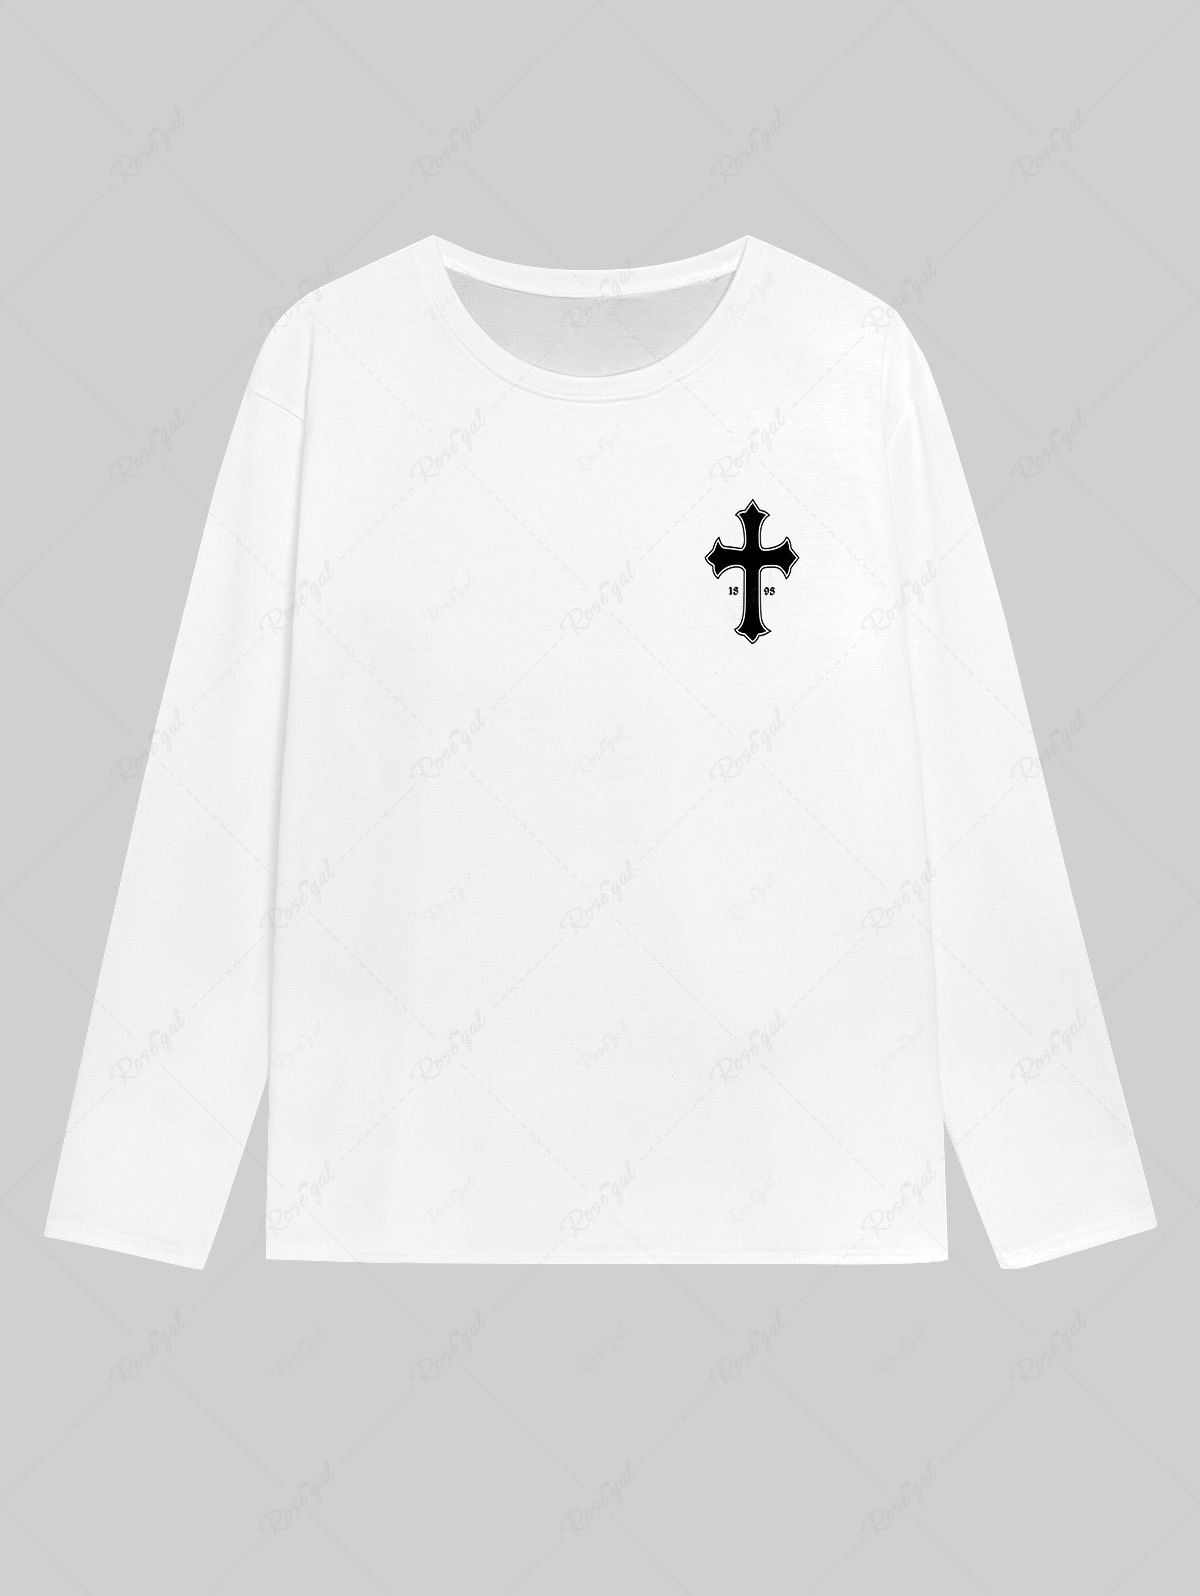 T-shirt Homme Gothique Imprimé Lettre et Croix Blanc 5XL